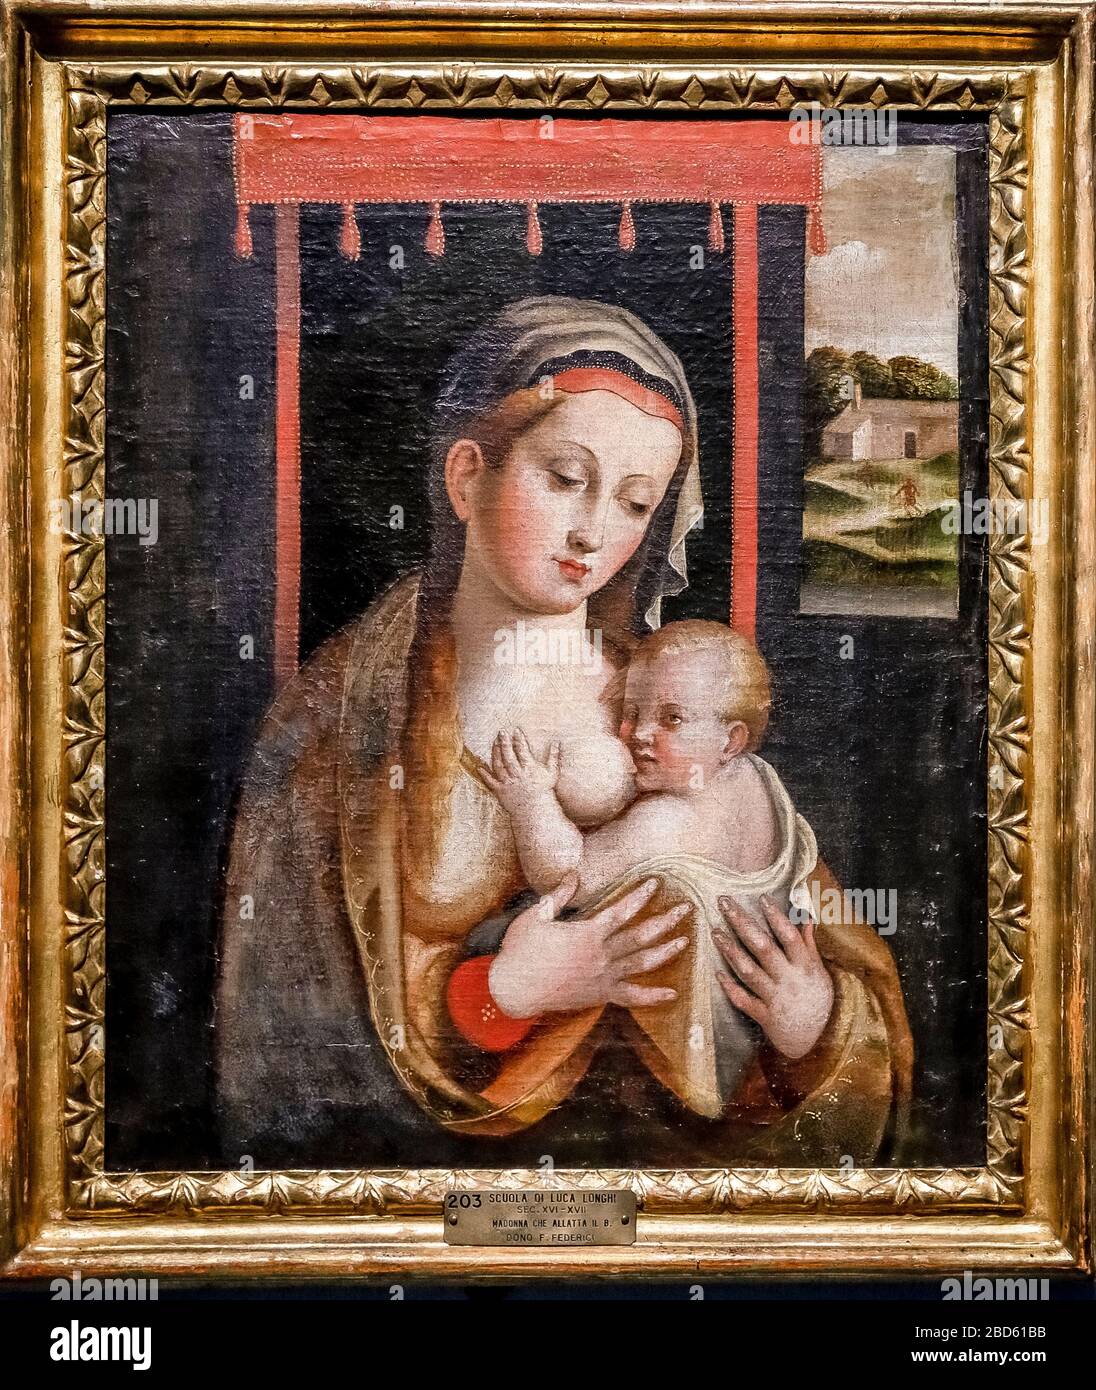 Italie Lombardie - Cremona - Musée civique - Ala Ponzone' - Barbara Longhi: Madonna et enfant, Madonna du lait Banque D'Images